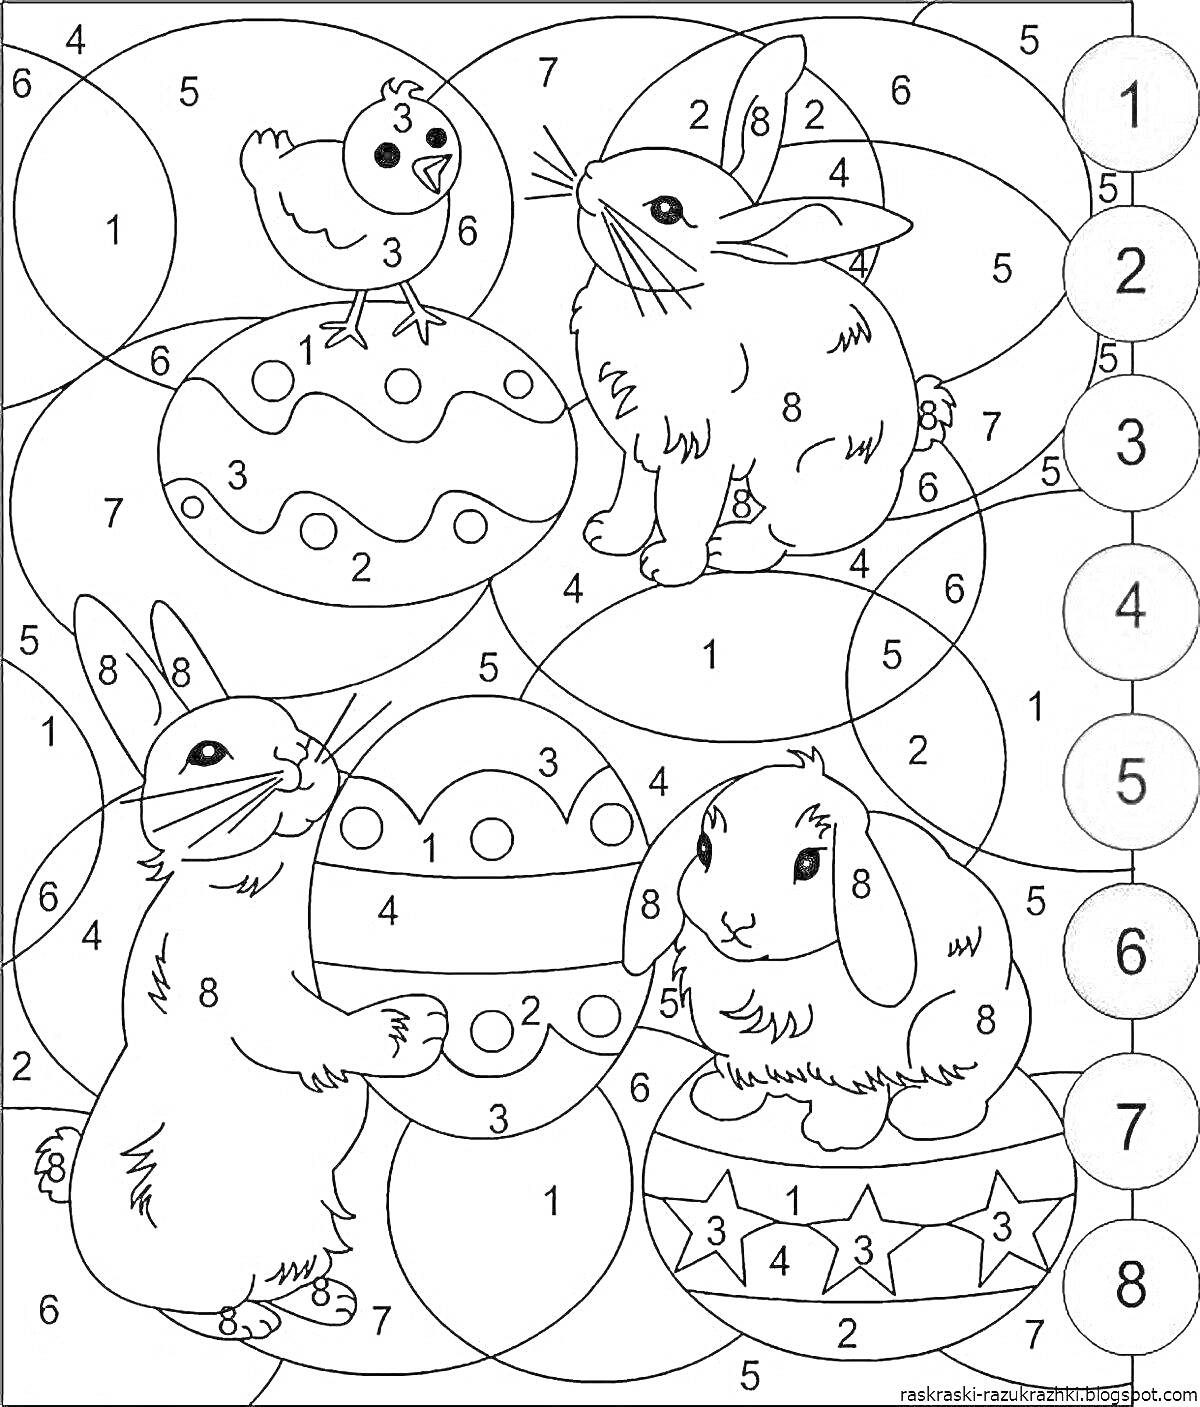 Раскраска Пасхальные кролики и цыпленок с пасхальными яйцами по номерам